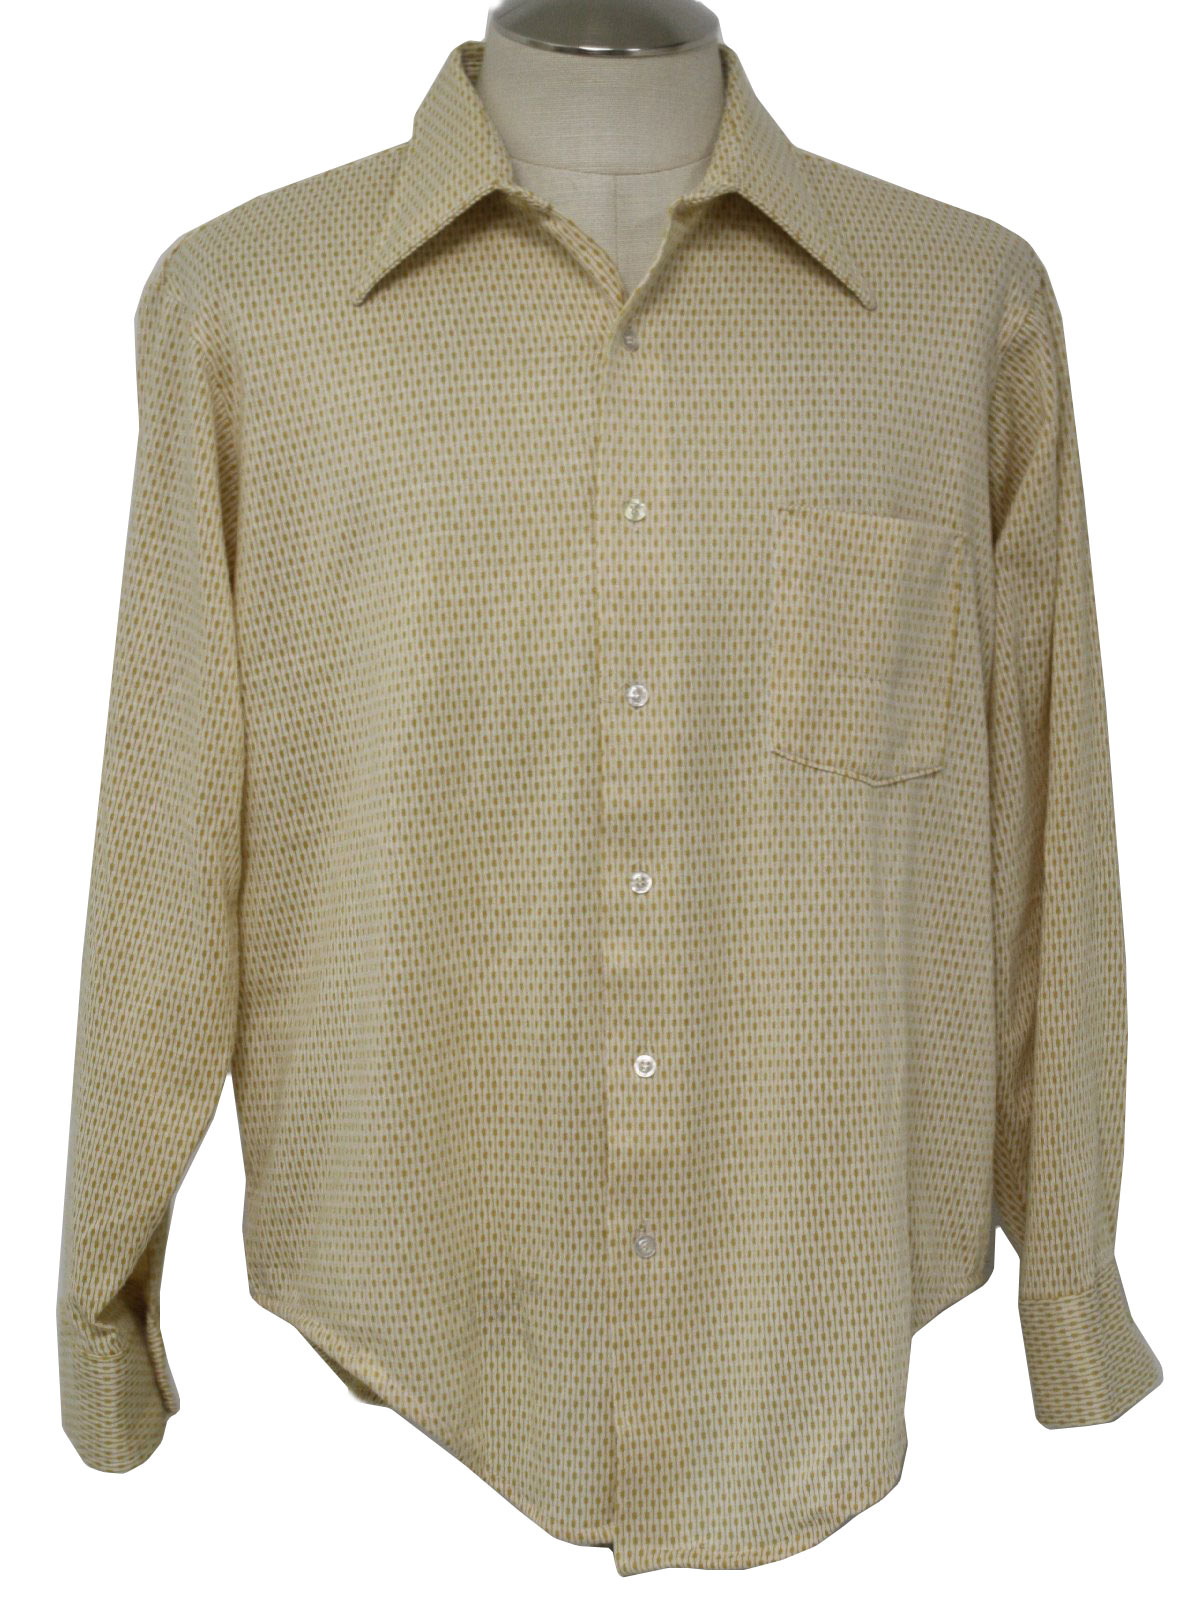 Van Heusen 1970s Vintage Shirt: 70s -Van Heusen- Mens dusty gold and ...